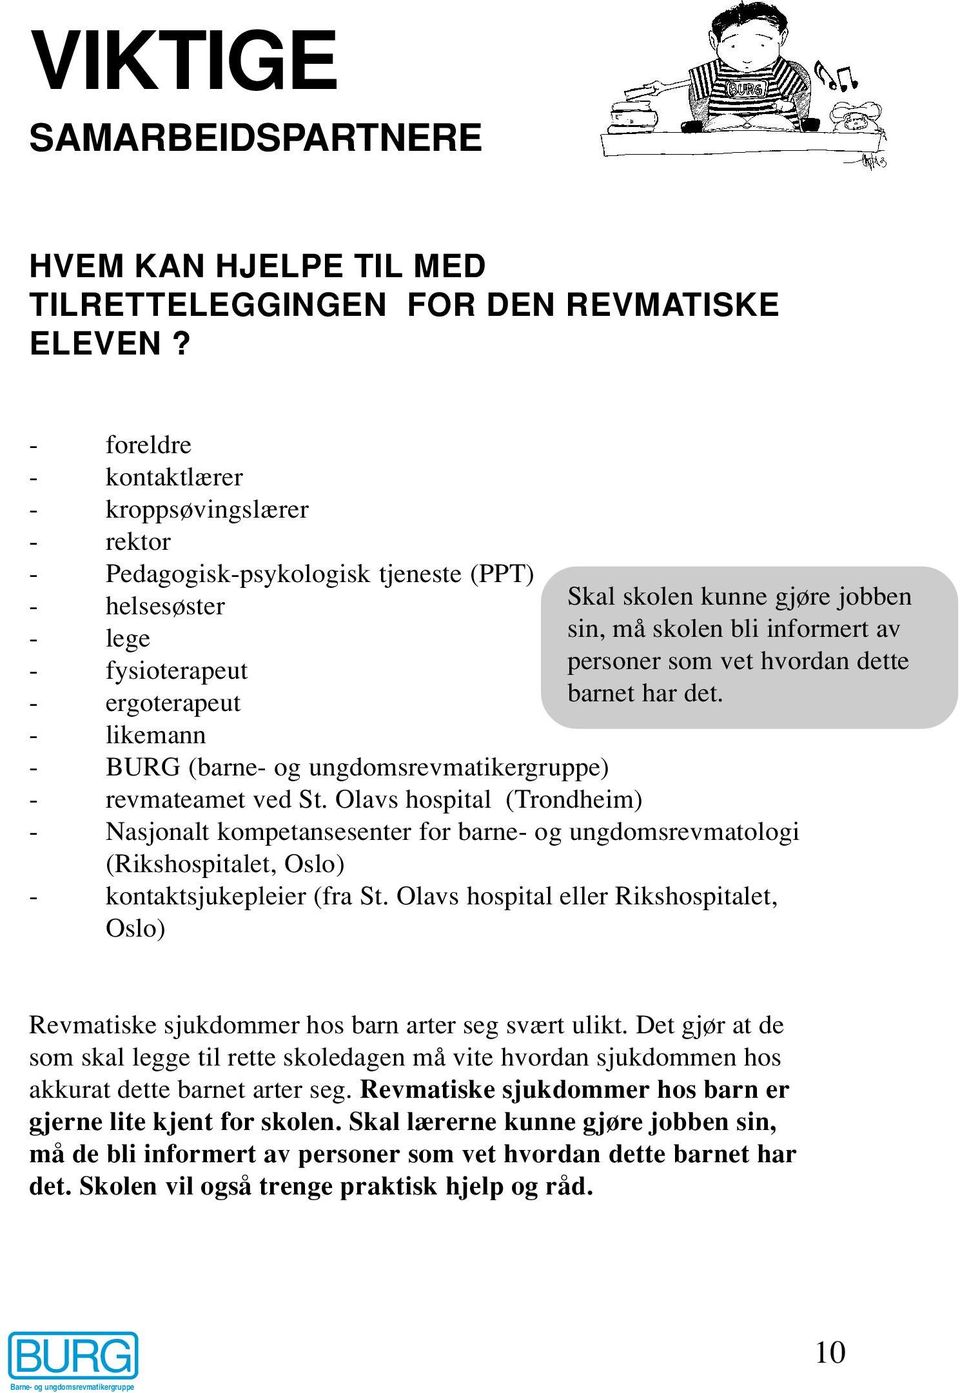 revmateamet ved St. Olavs hospital (Trondheim) Skal skolen kunne gjøre jobben sin, må skolen bli informert av personer som vet hvordan dette barnet har det.